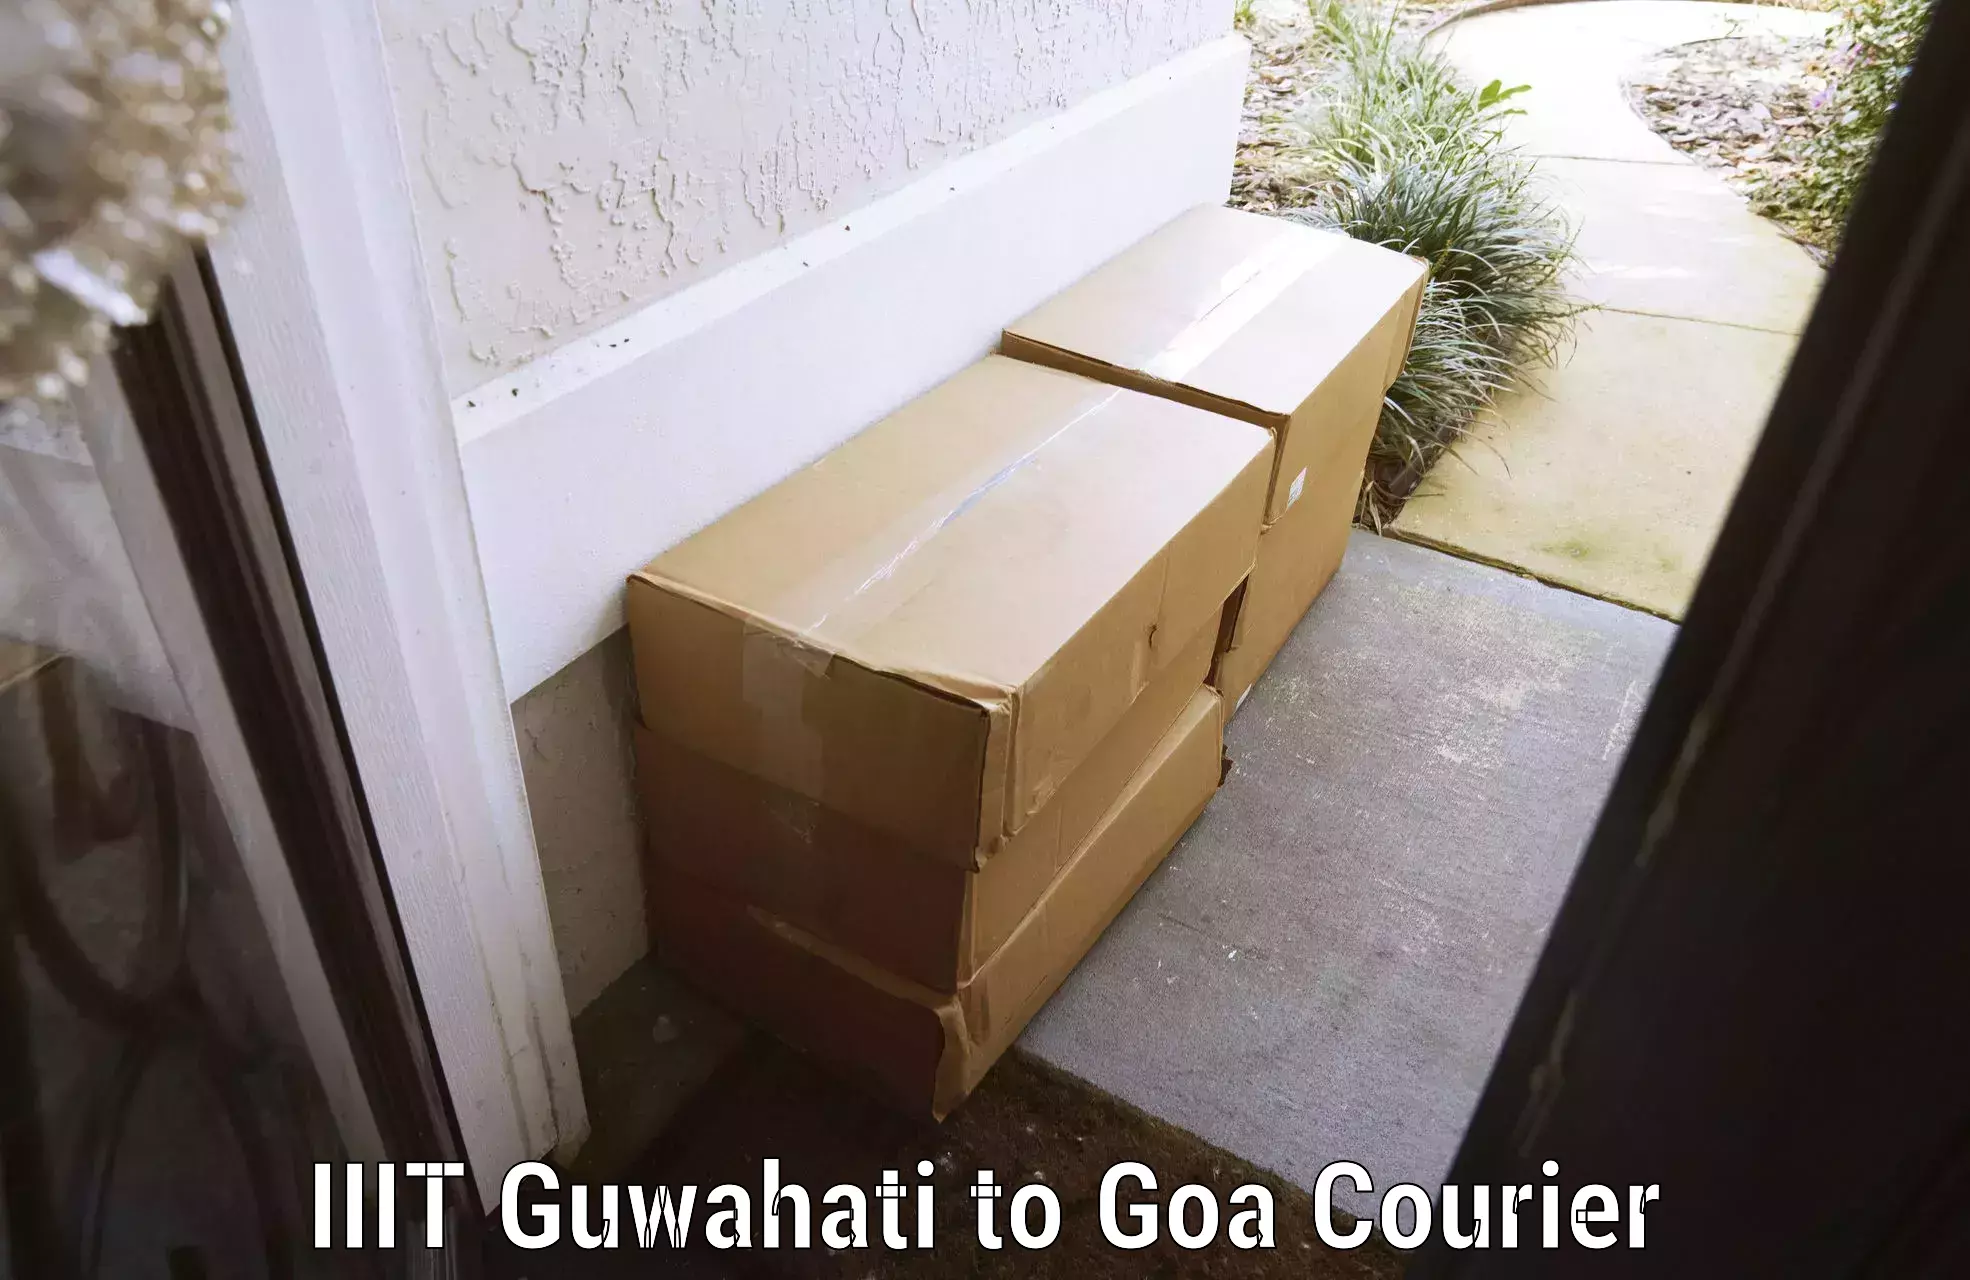 Luggage shipment processing IIIT Guwahati to IIT Goa